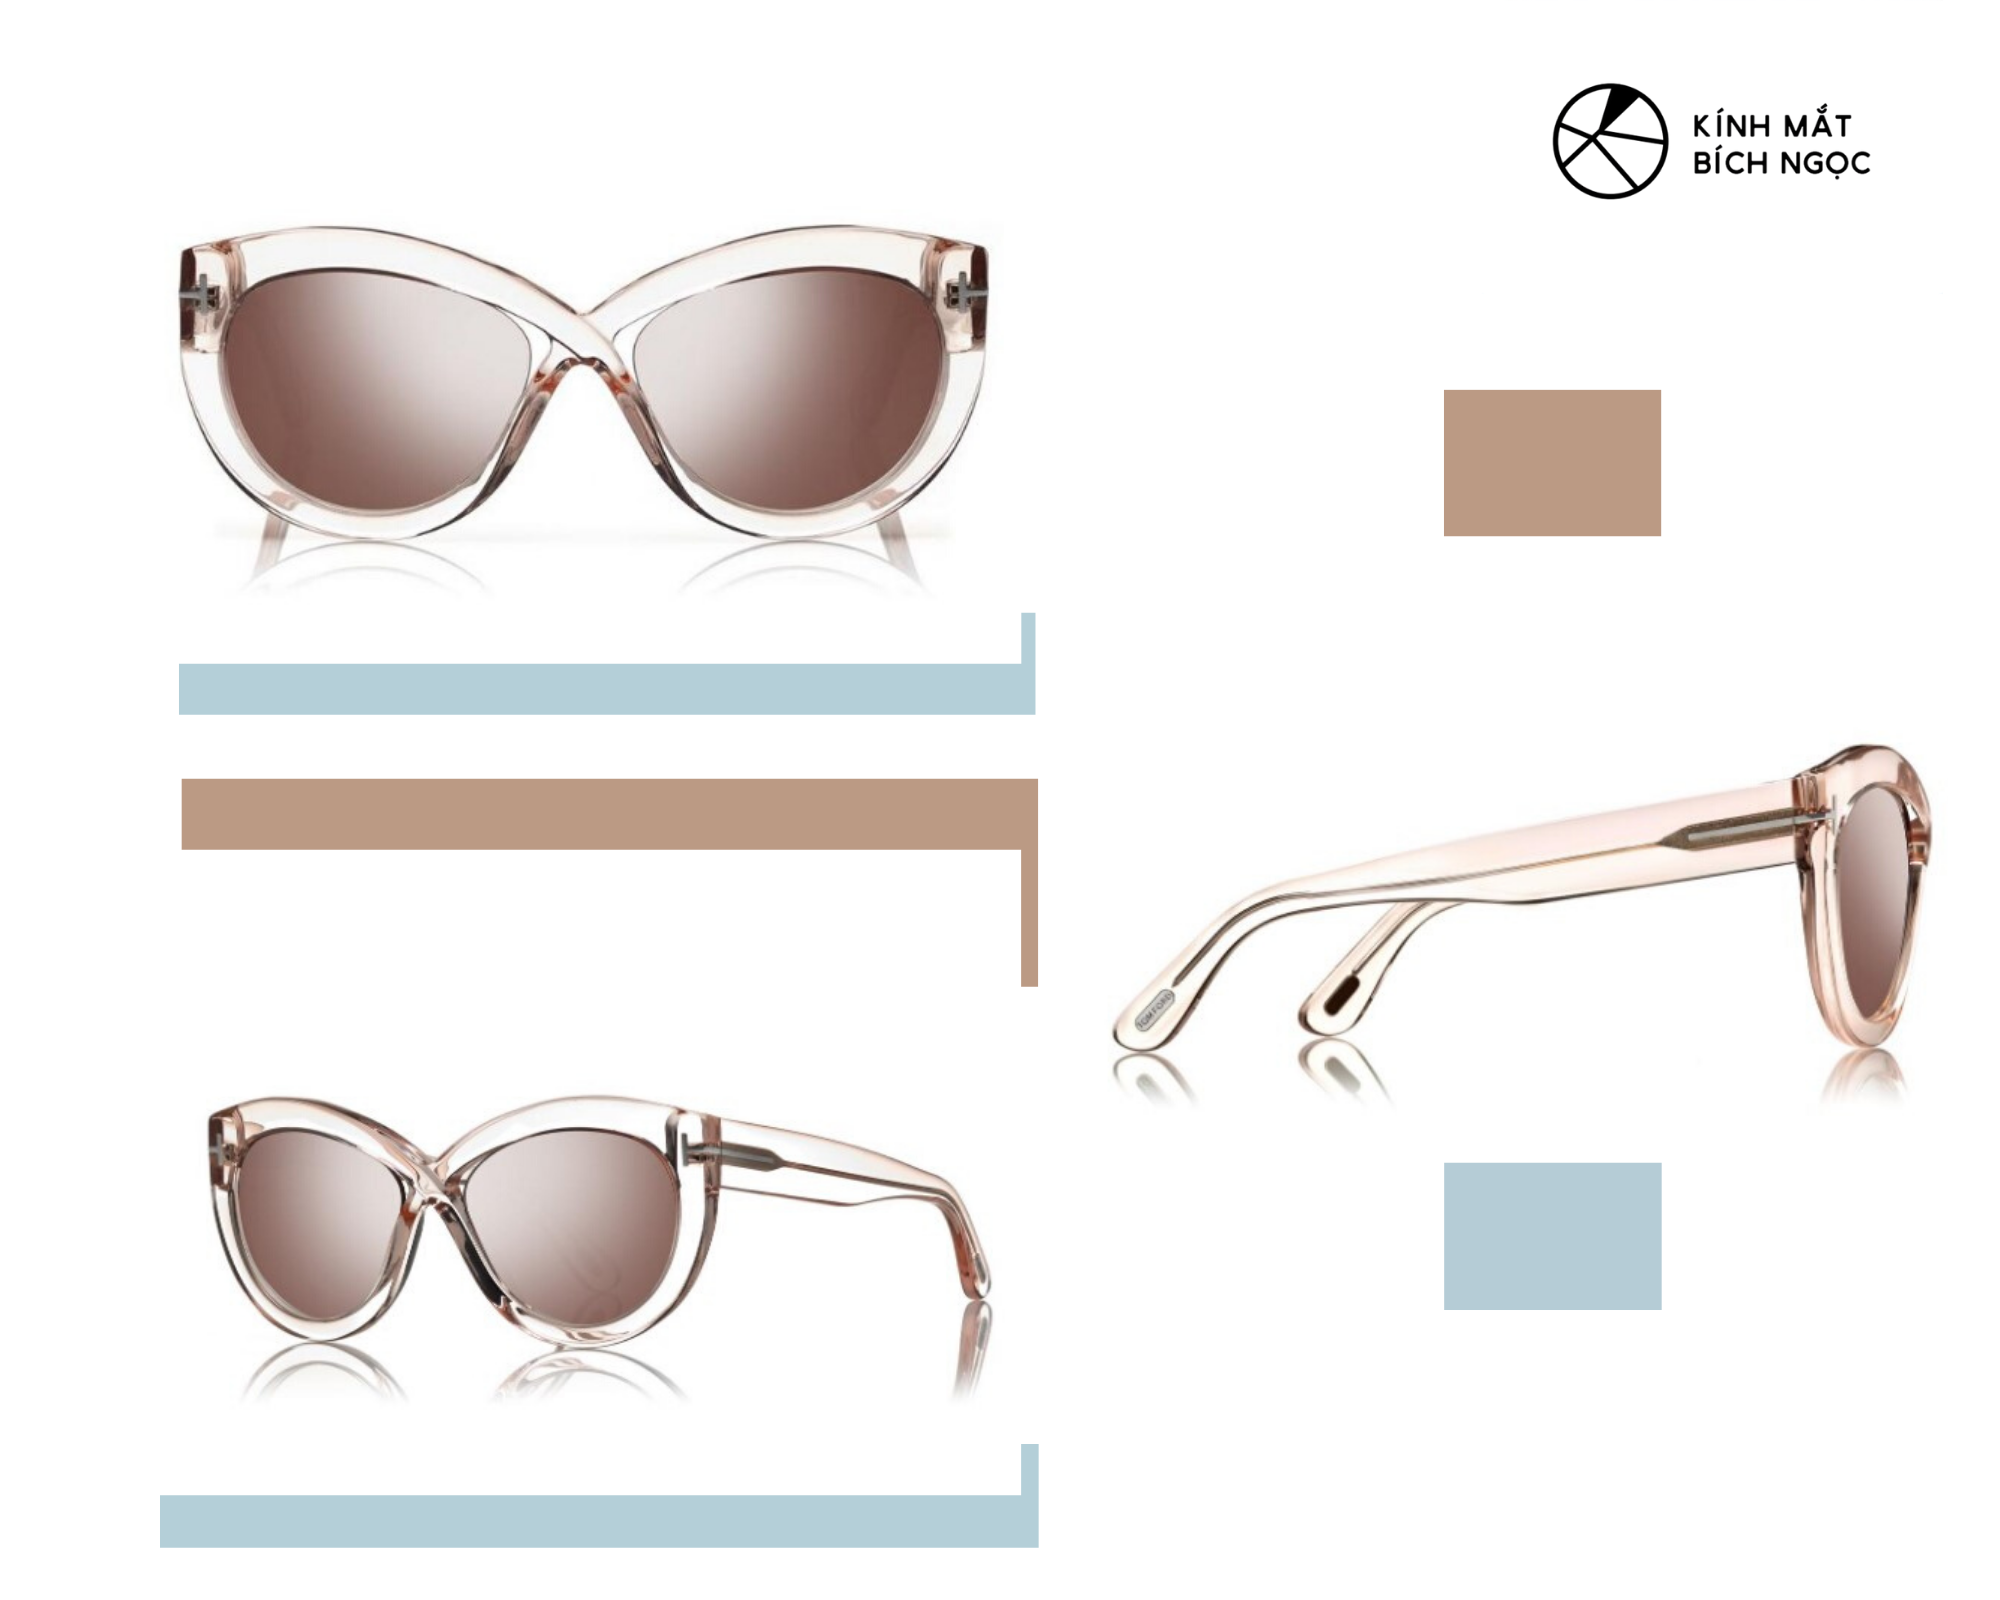 Thiết kế mẫu kính Tom Ford Diane Sunglasses có giá 430$